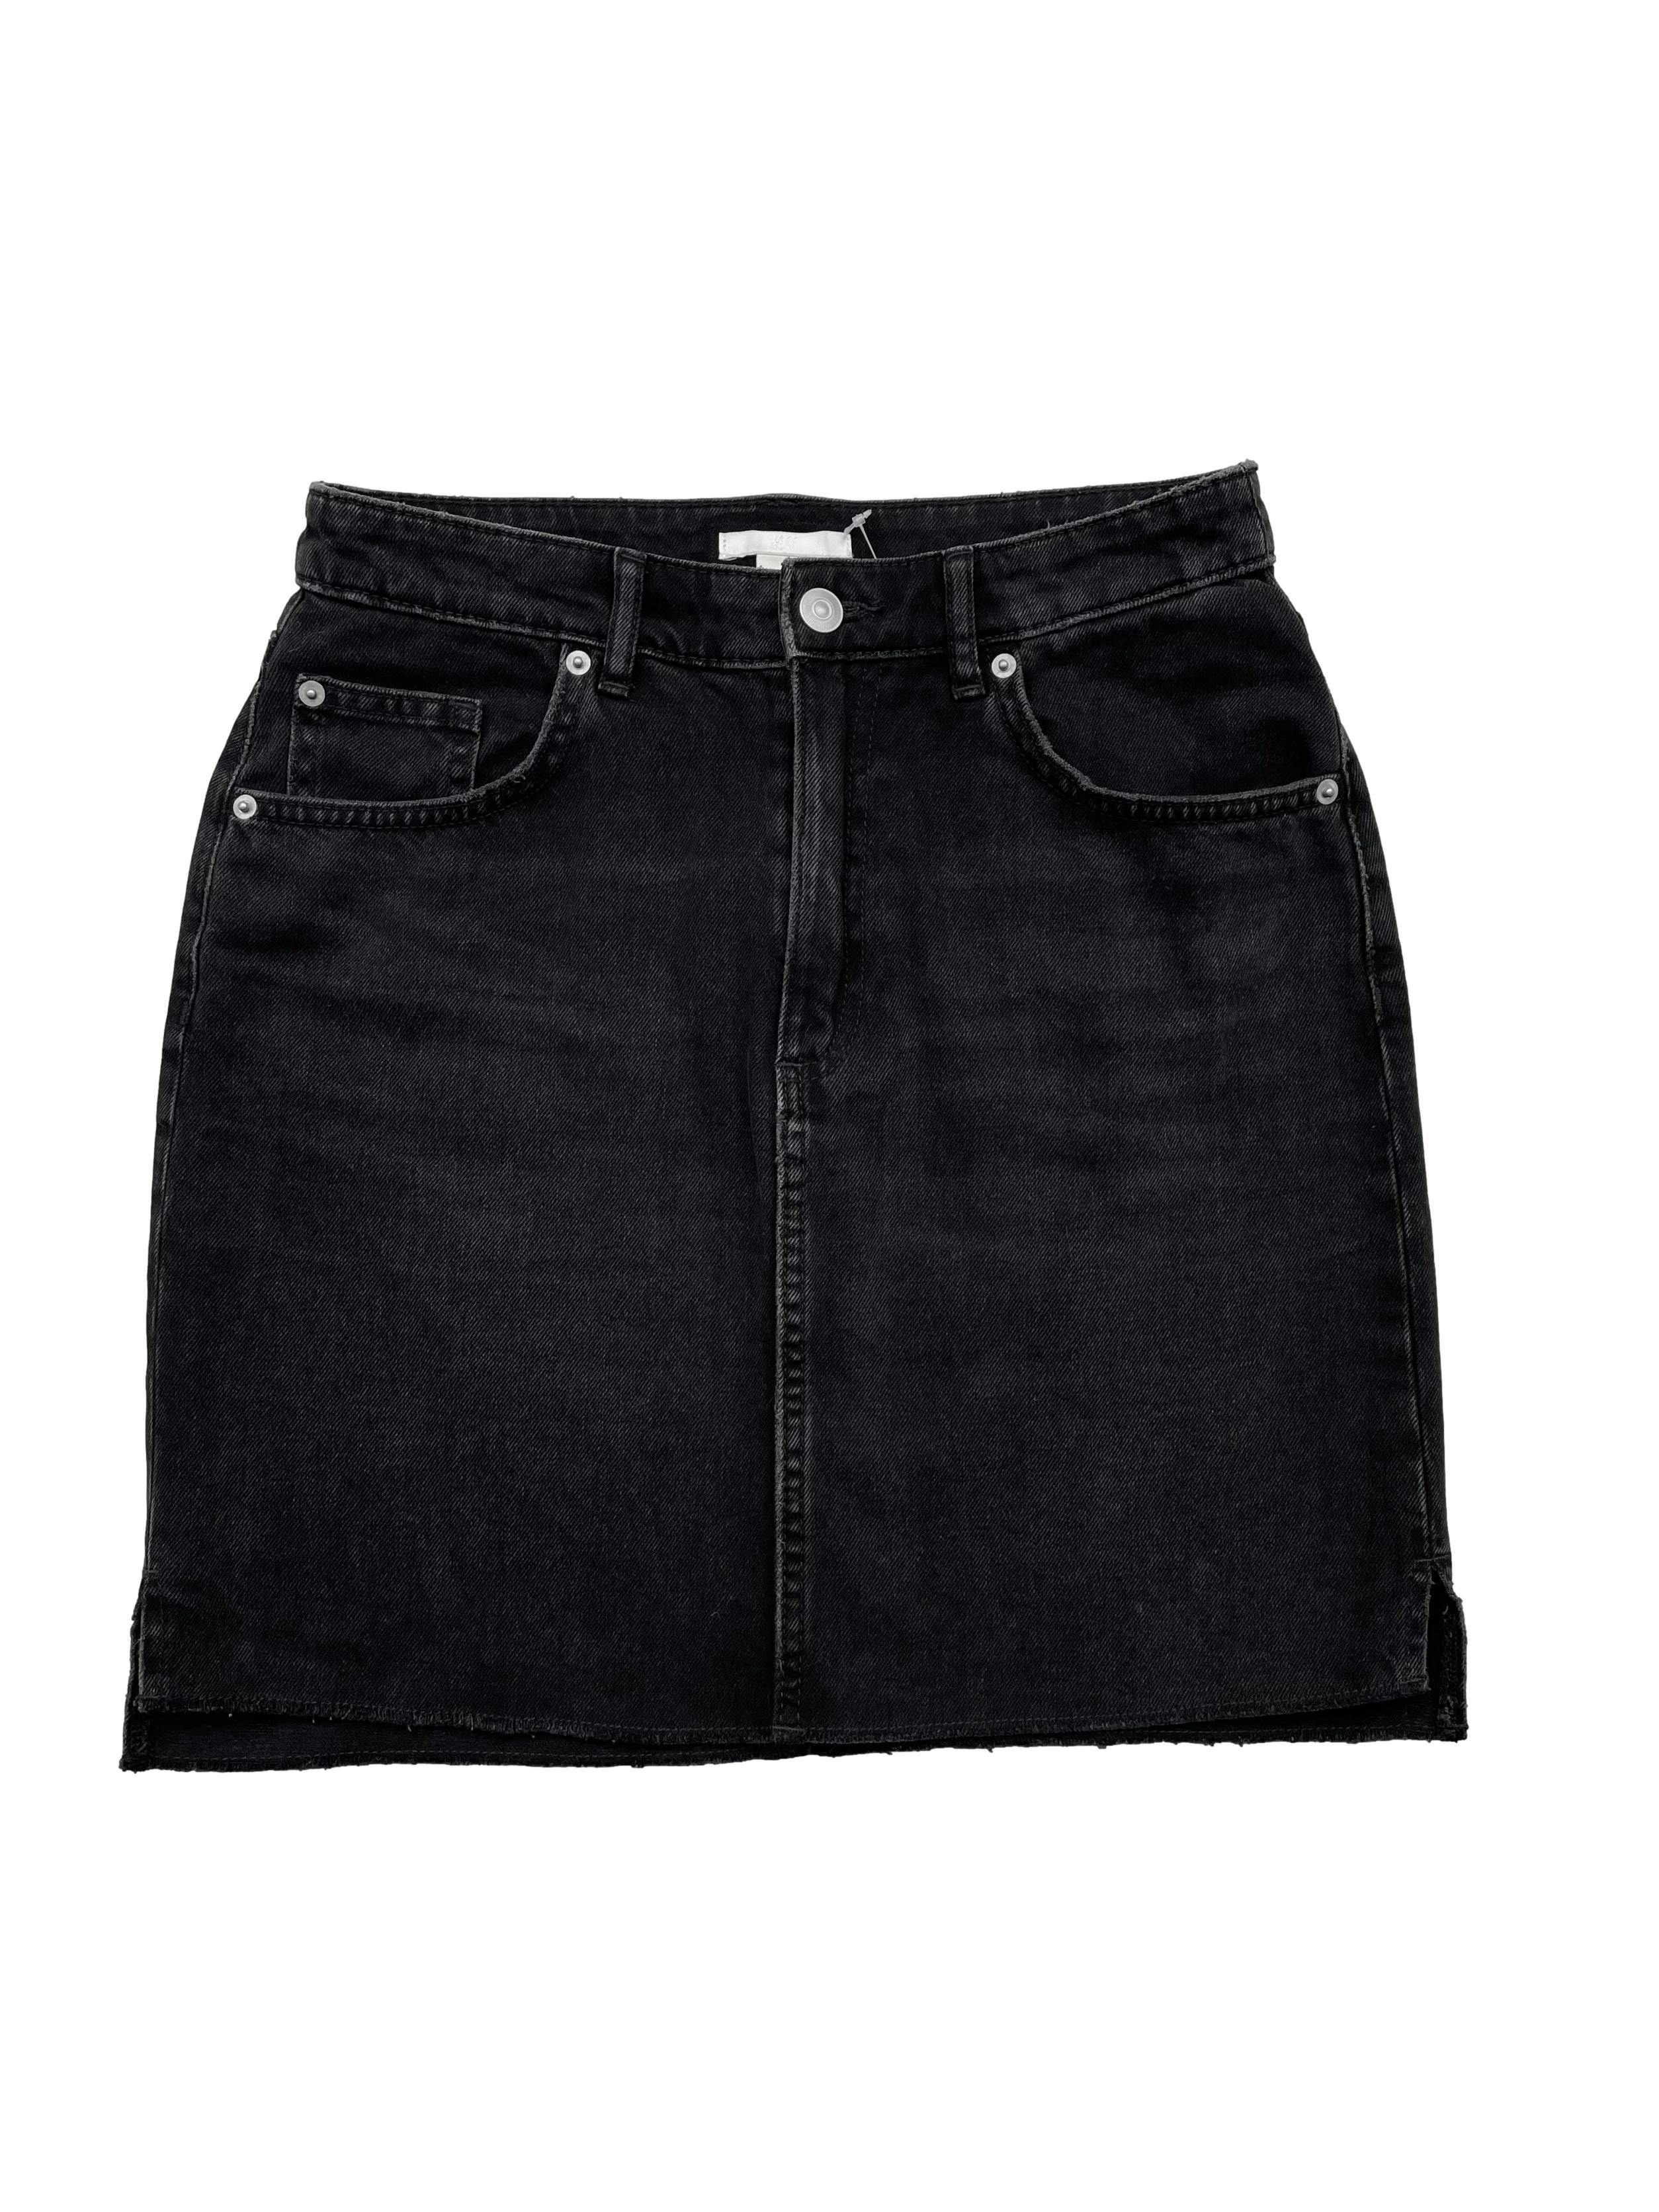 Falda jean H&M negra efecto lavado con aberturas laterales en basta. Cintura 68cm Largo 45cm